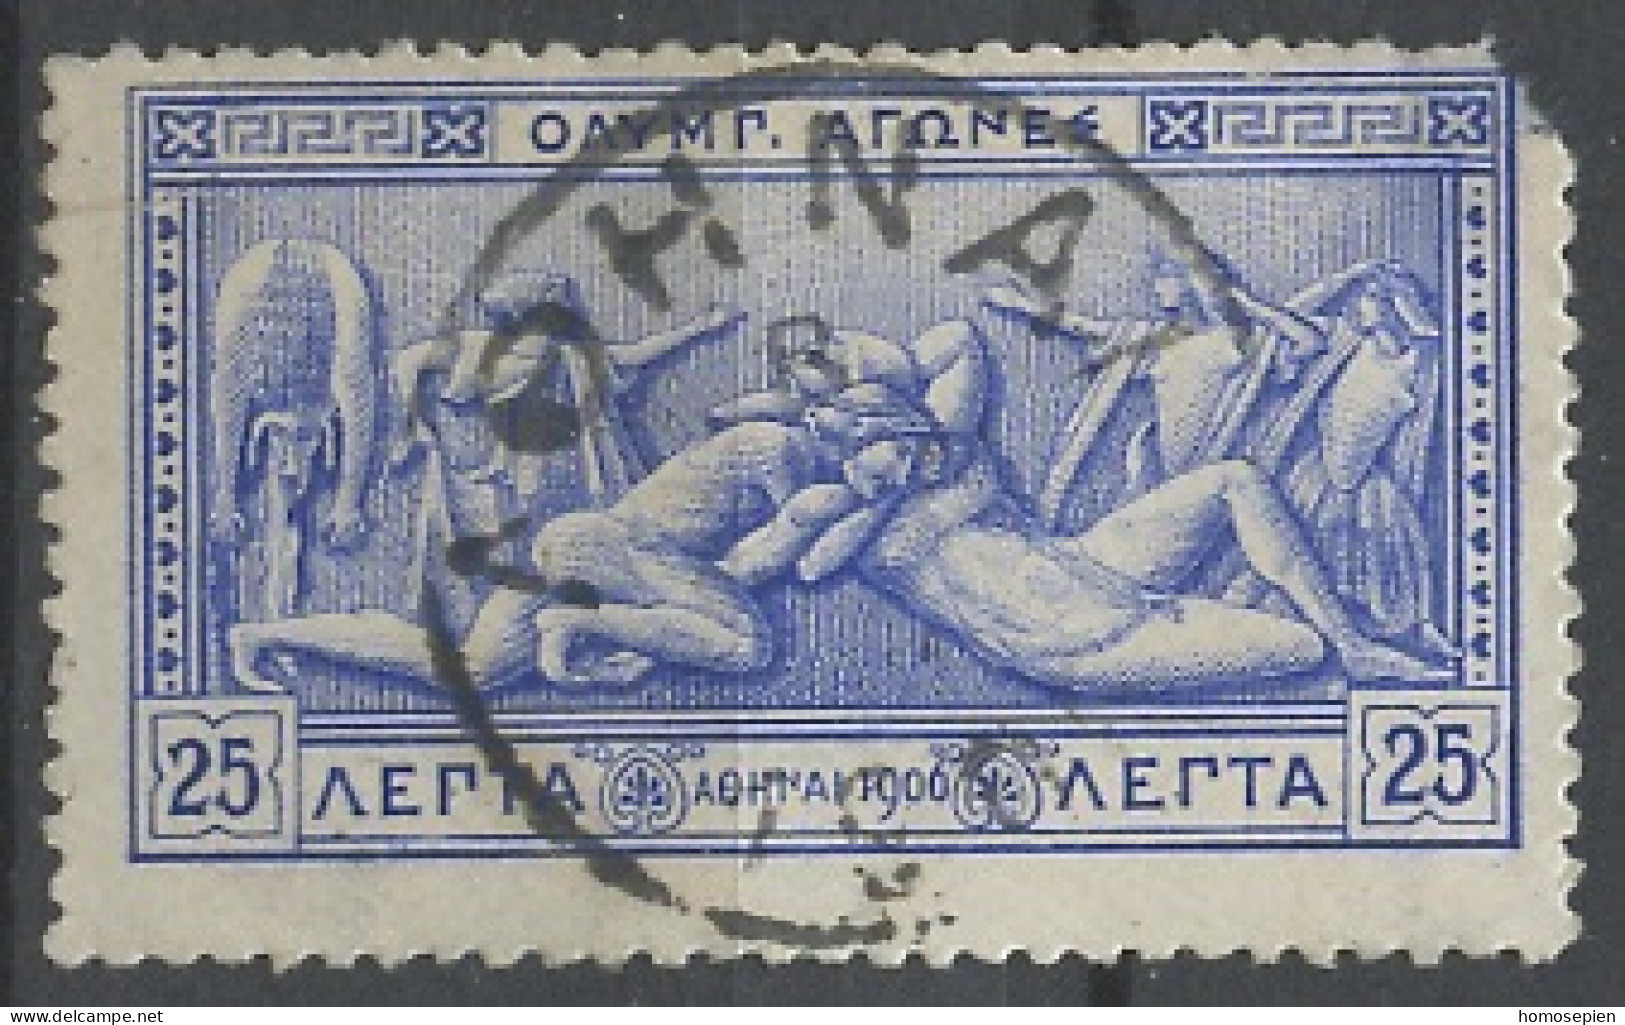 Grèce - Griechenland - Greece 1906 Y&T N°171 - Michel N°150 (o) - 25l Hercule Et Antée - Gebruikt